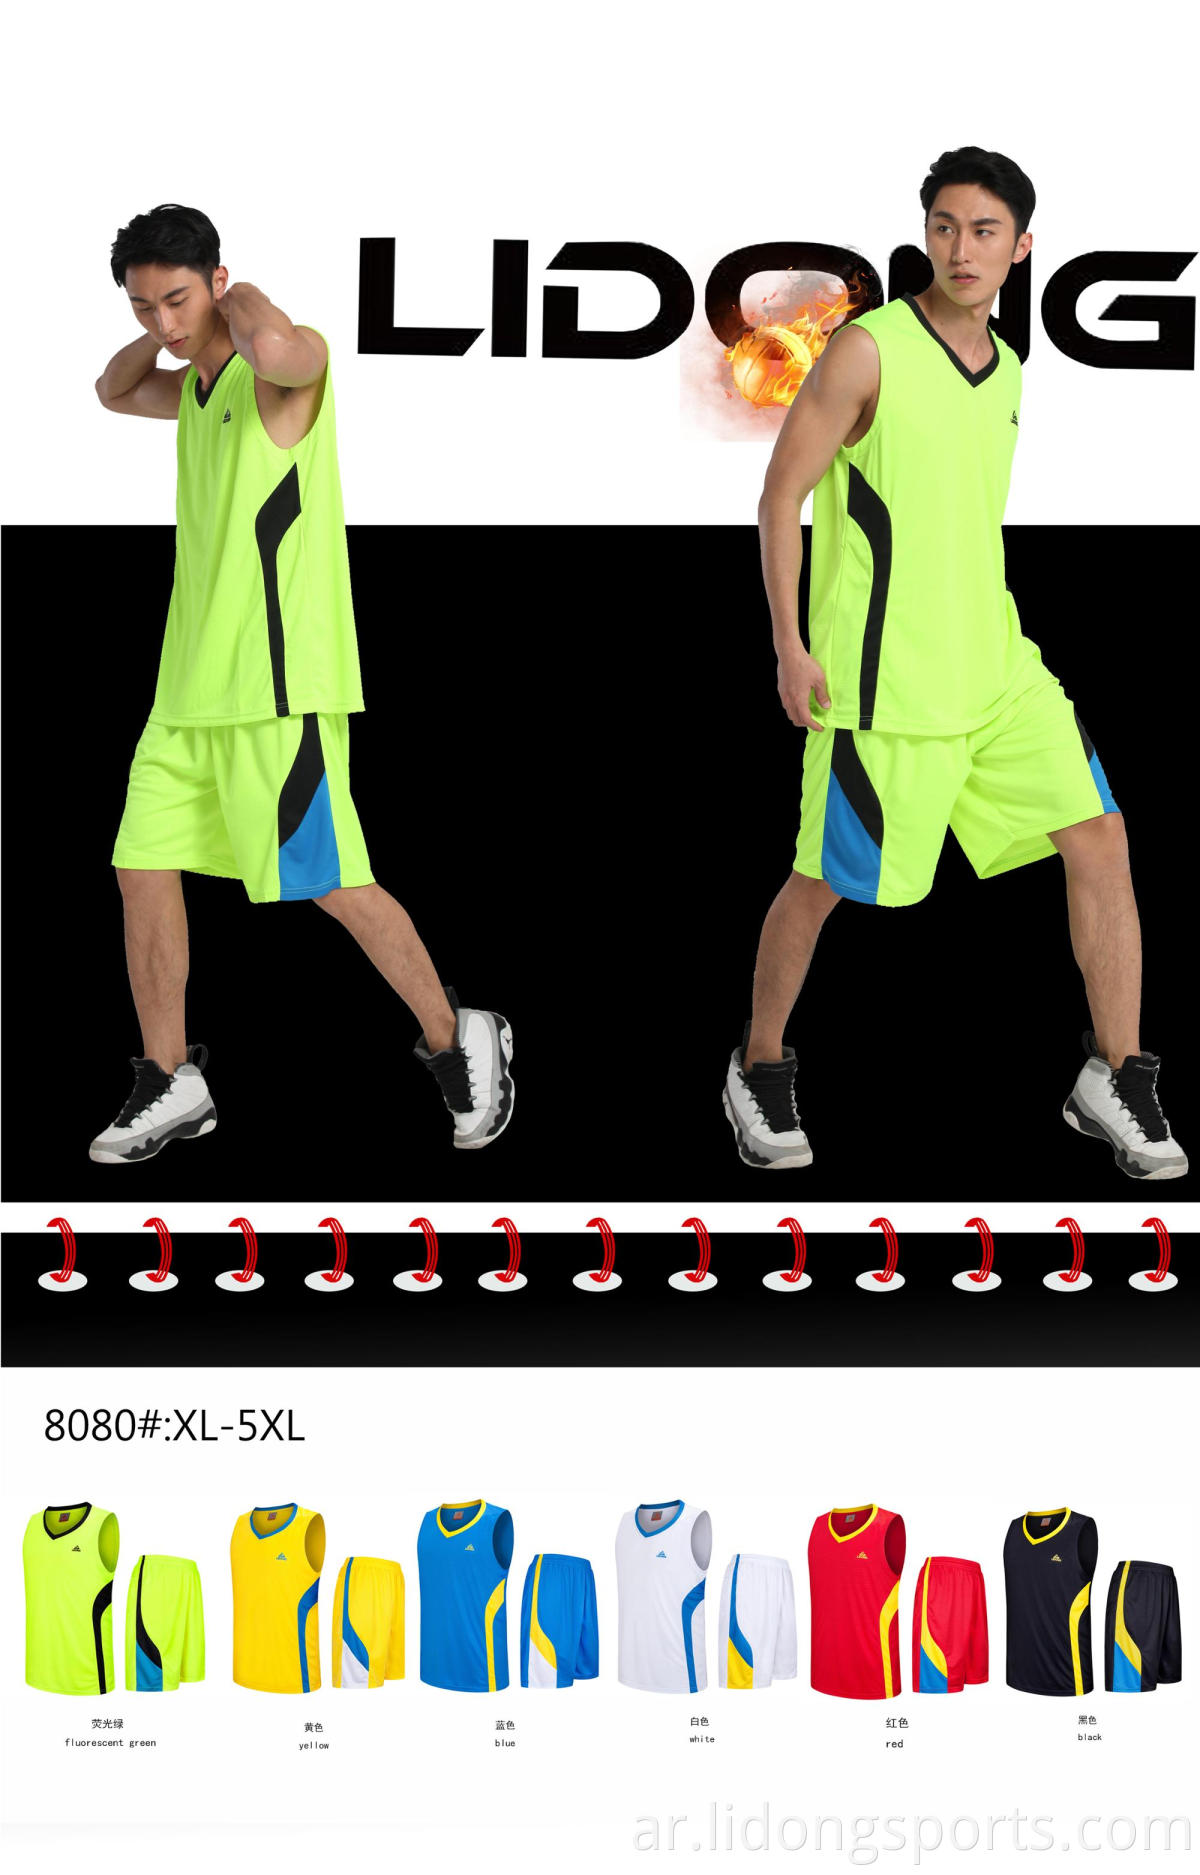 تصميم شعار جديد تصميم لعبة كرة السلة للملابس الرياضية يرتدون الرجال الذين يضعون زيًا للبالغين.